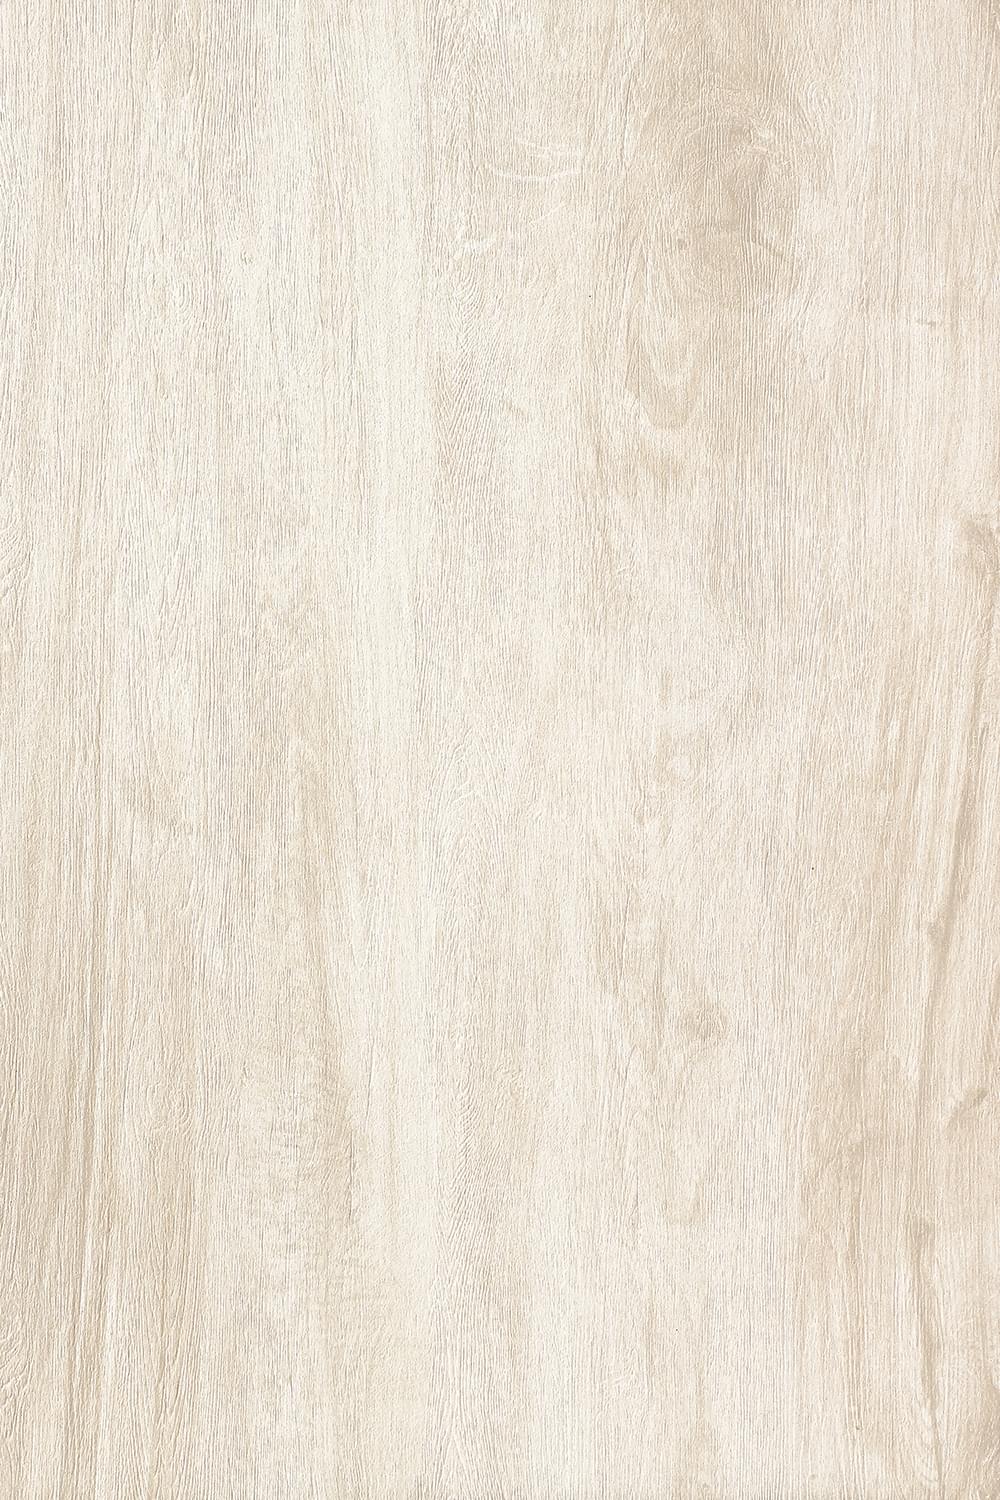 西雅图 / CMB6901 / 600x900mm / 木纹砖